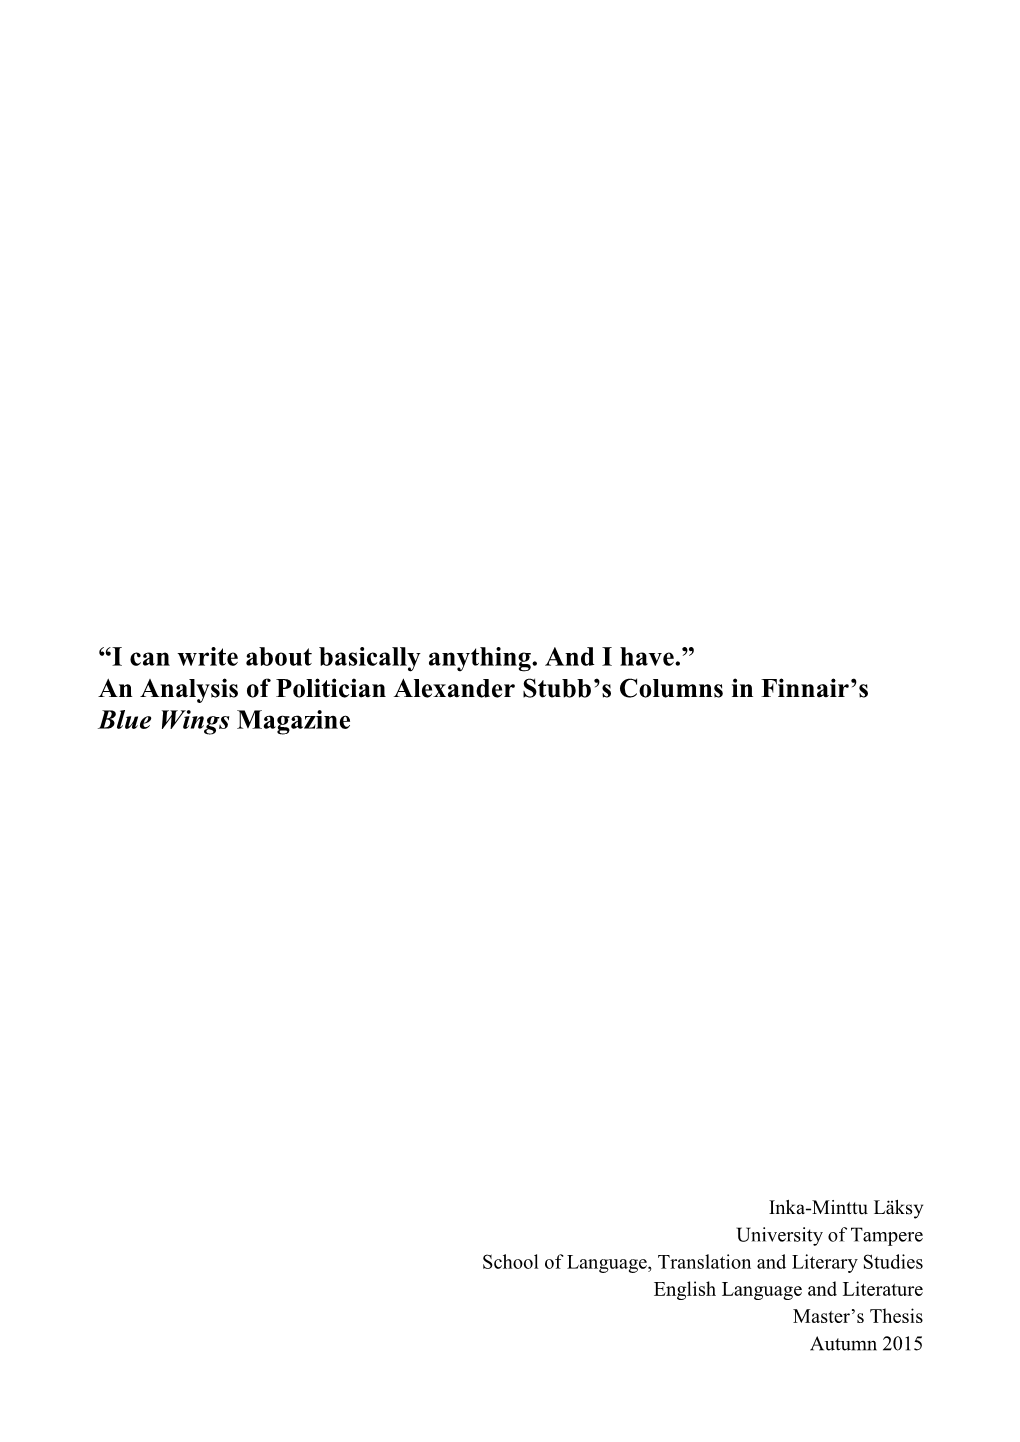 An Analysis of Politician Alexander Stubb's Columns in Finnair's